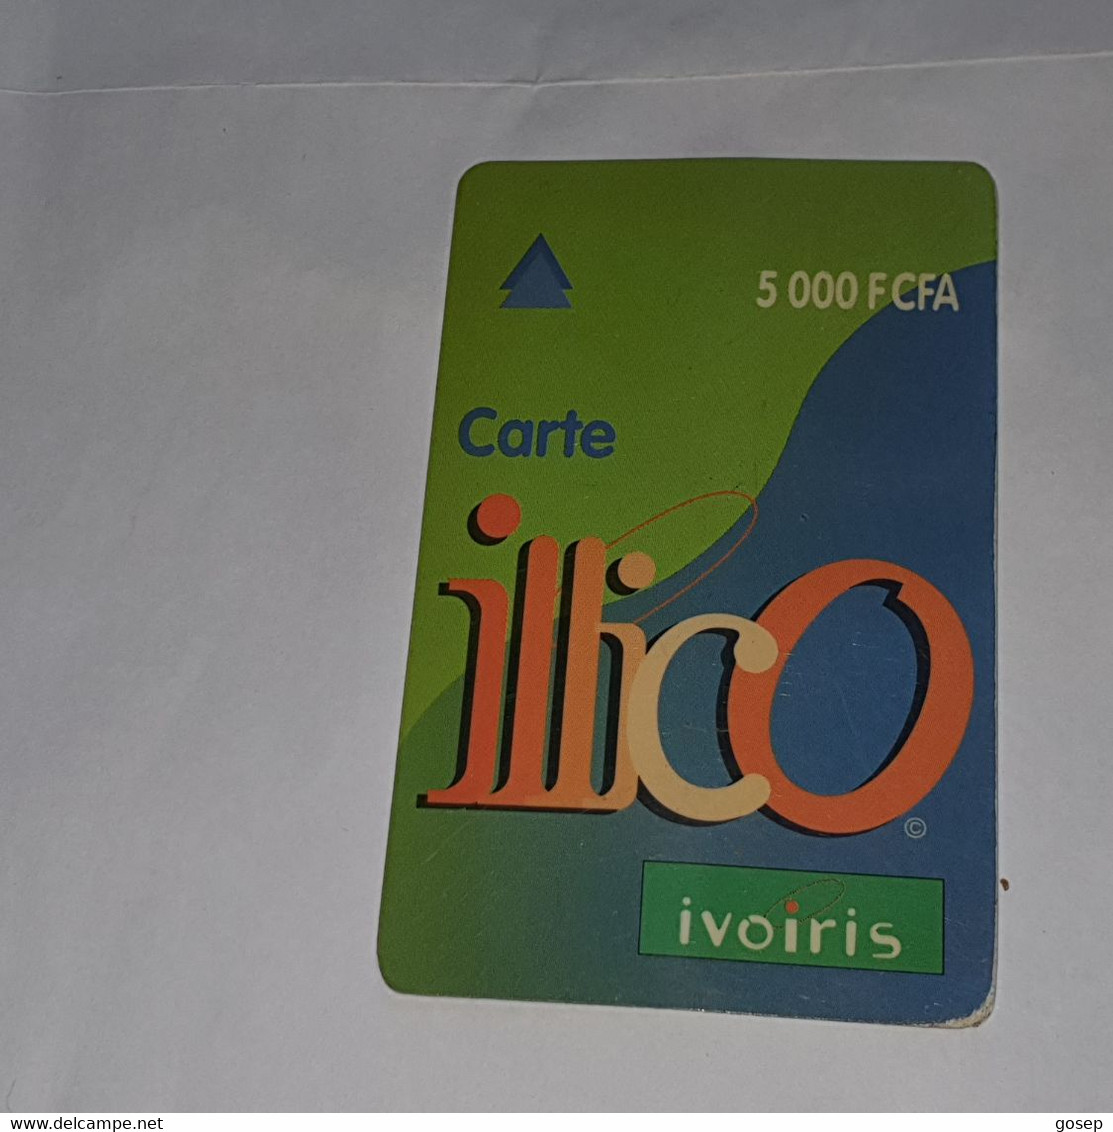 Ivory Coast-(CI-ILL-REF-0004B/2)-carte Lllico(10)-(5.000fcfa)-(96-08-44-89-85-23-00)-used Card+1card Prepiad Free - Ivoorkust